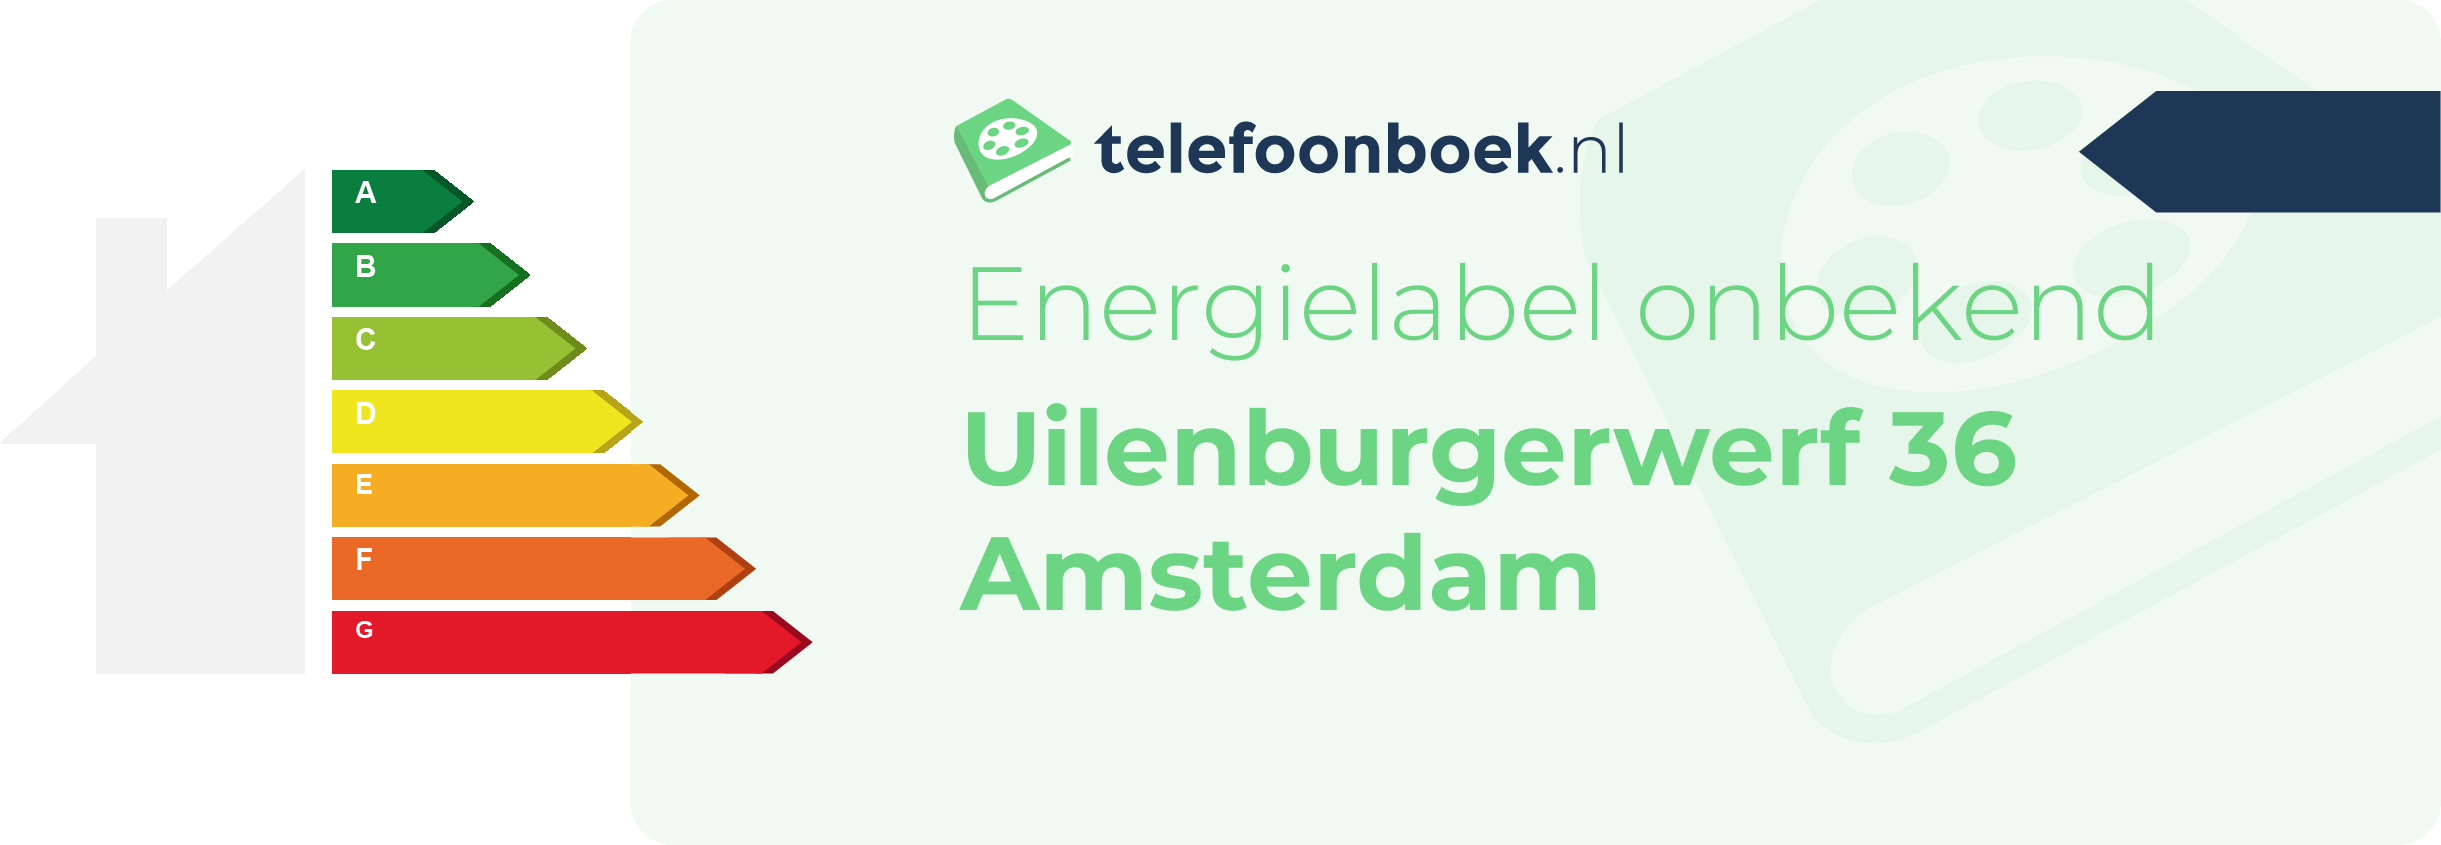 Energielabel Uilenburgerwerf 36 Amsterdam